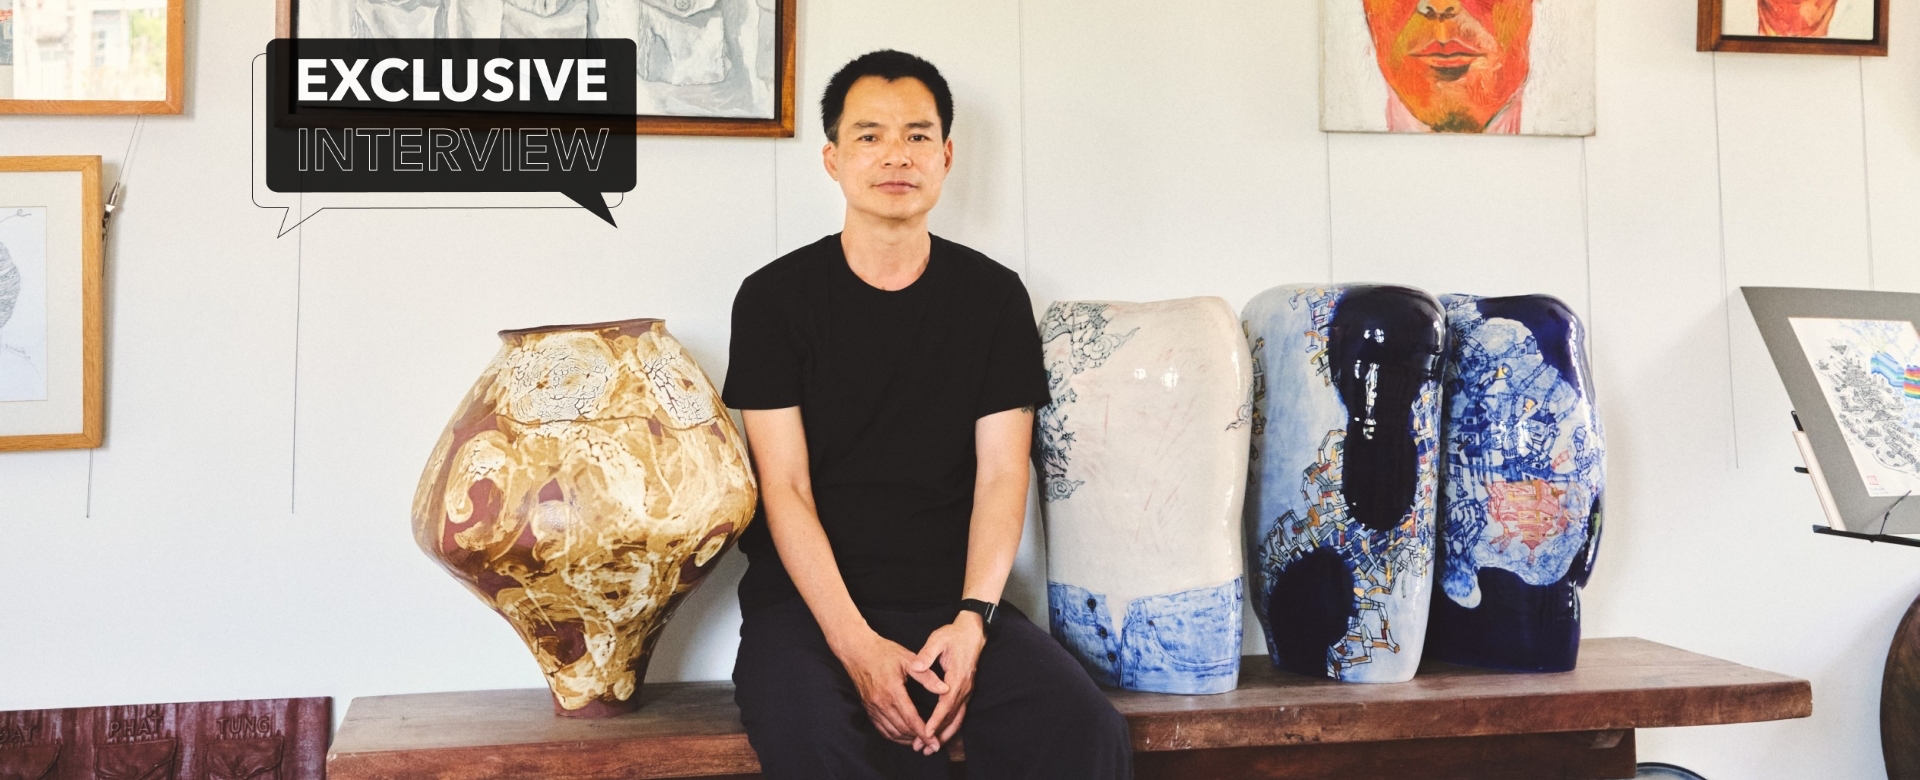 Nghệ sĩ Bùi Công Khánh: “Hợp tác cùng thương hiệu Dior cho tôi cơ hội khám phá thế giới khác”